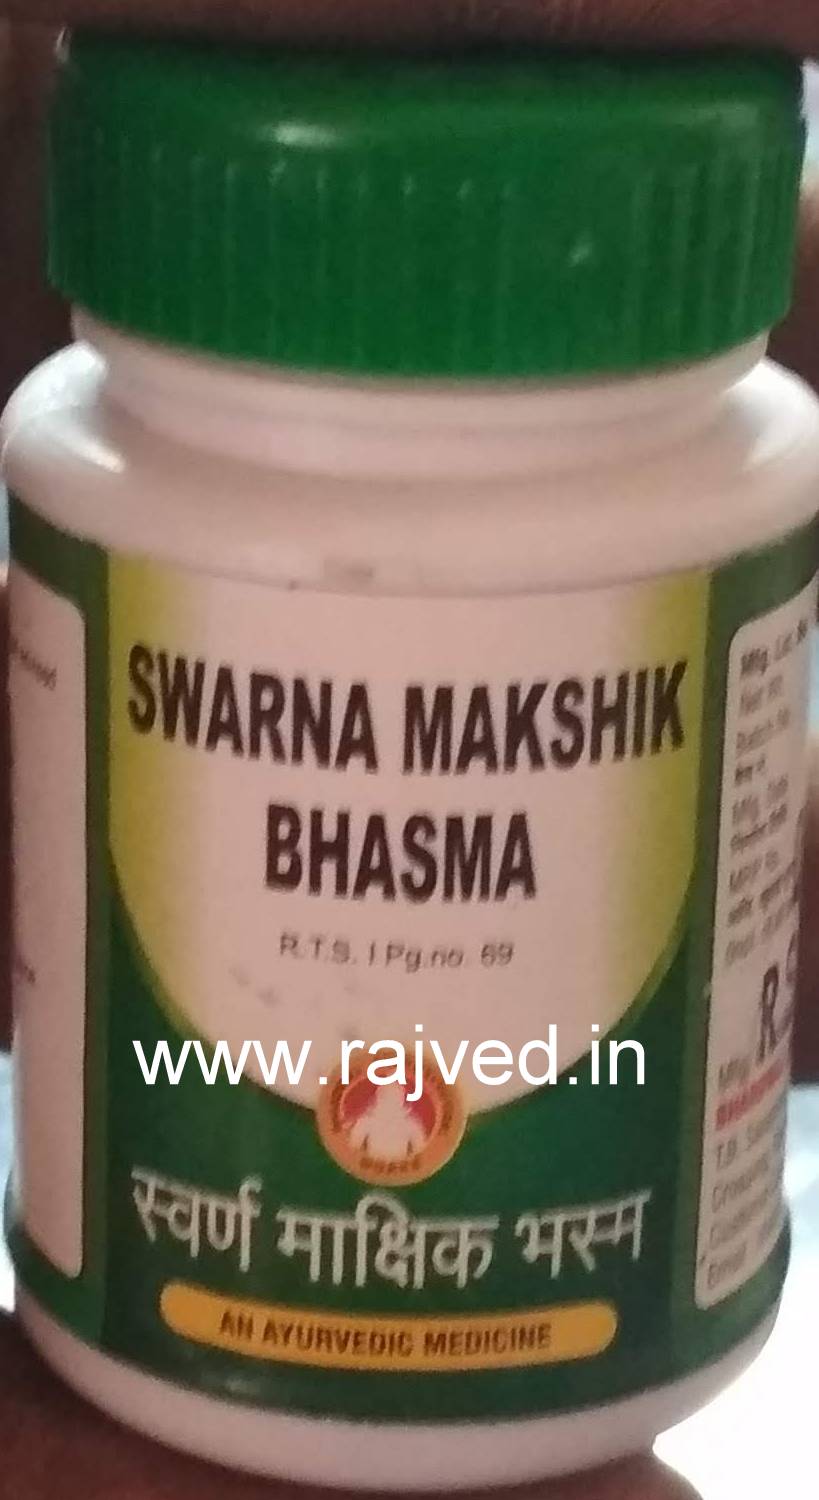 swarna makshik bhasma 500gm upto 15% off bharadwaj pharma indore